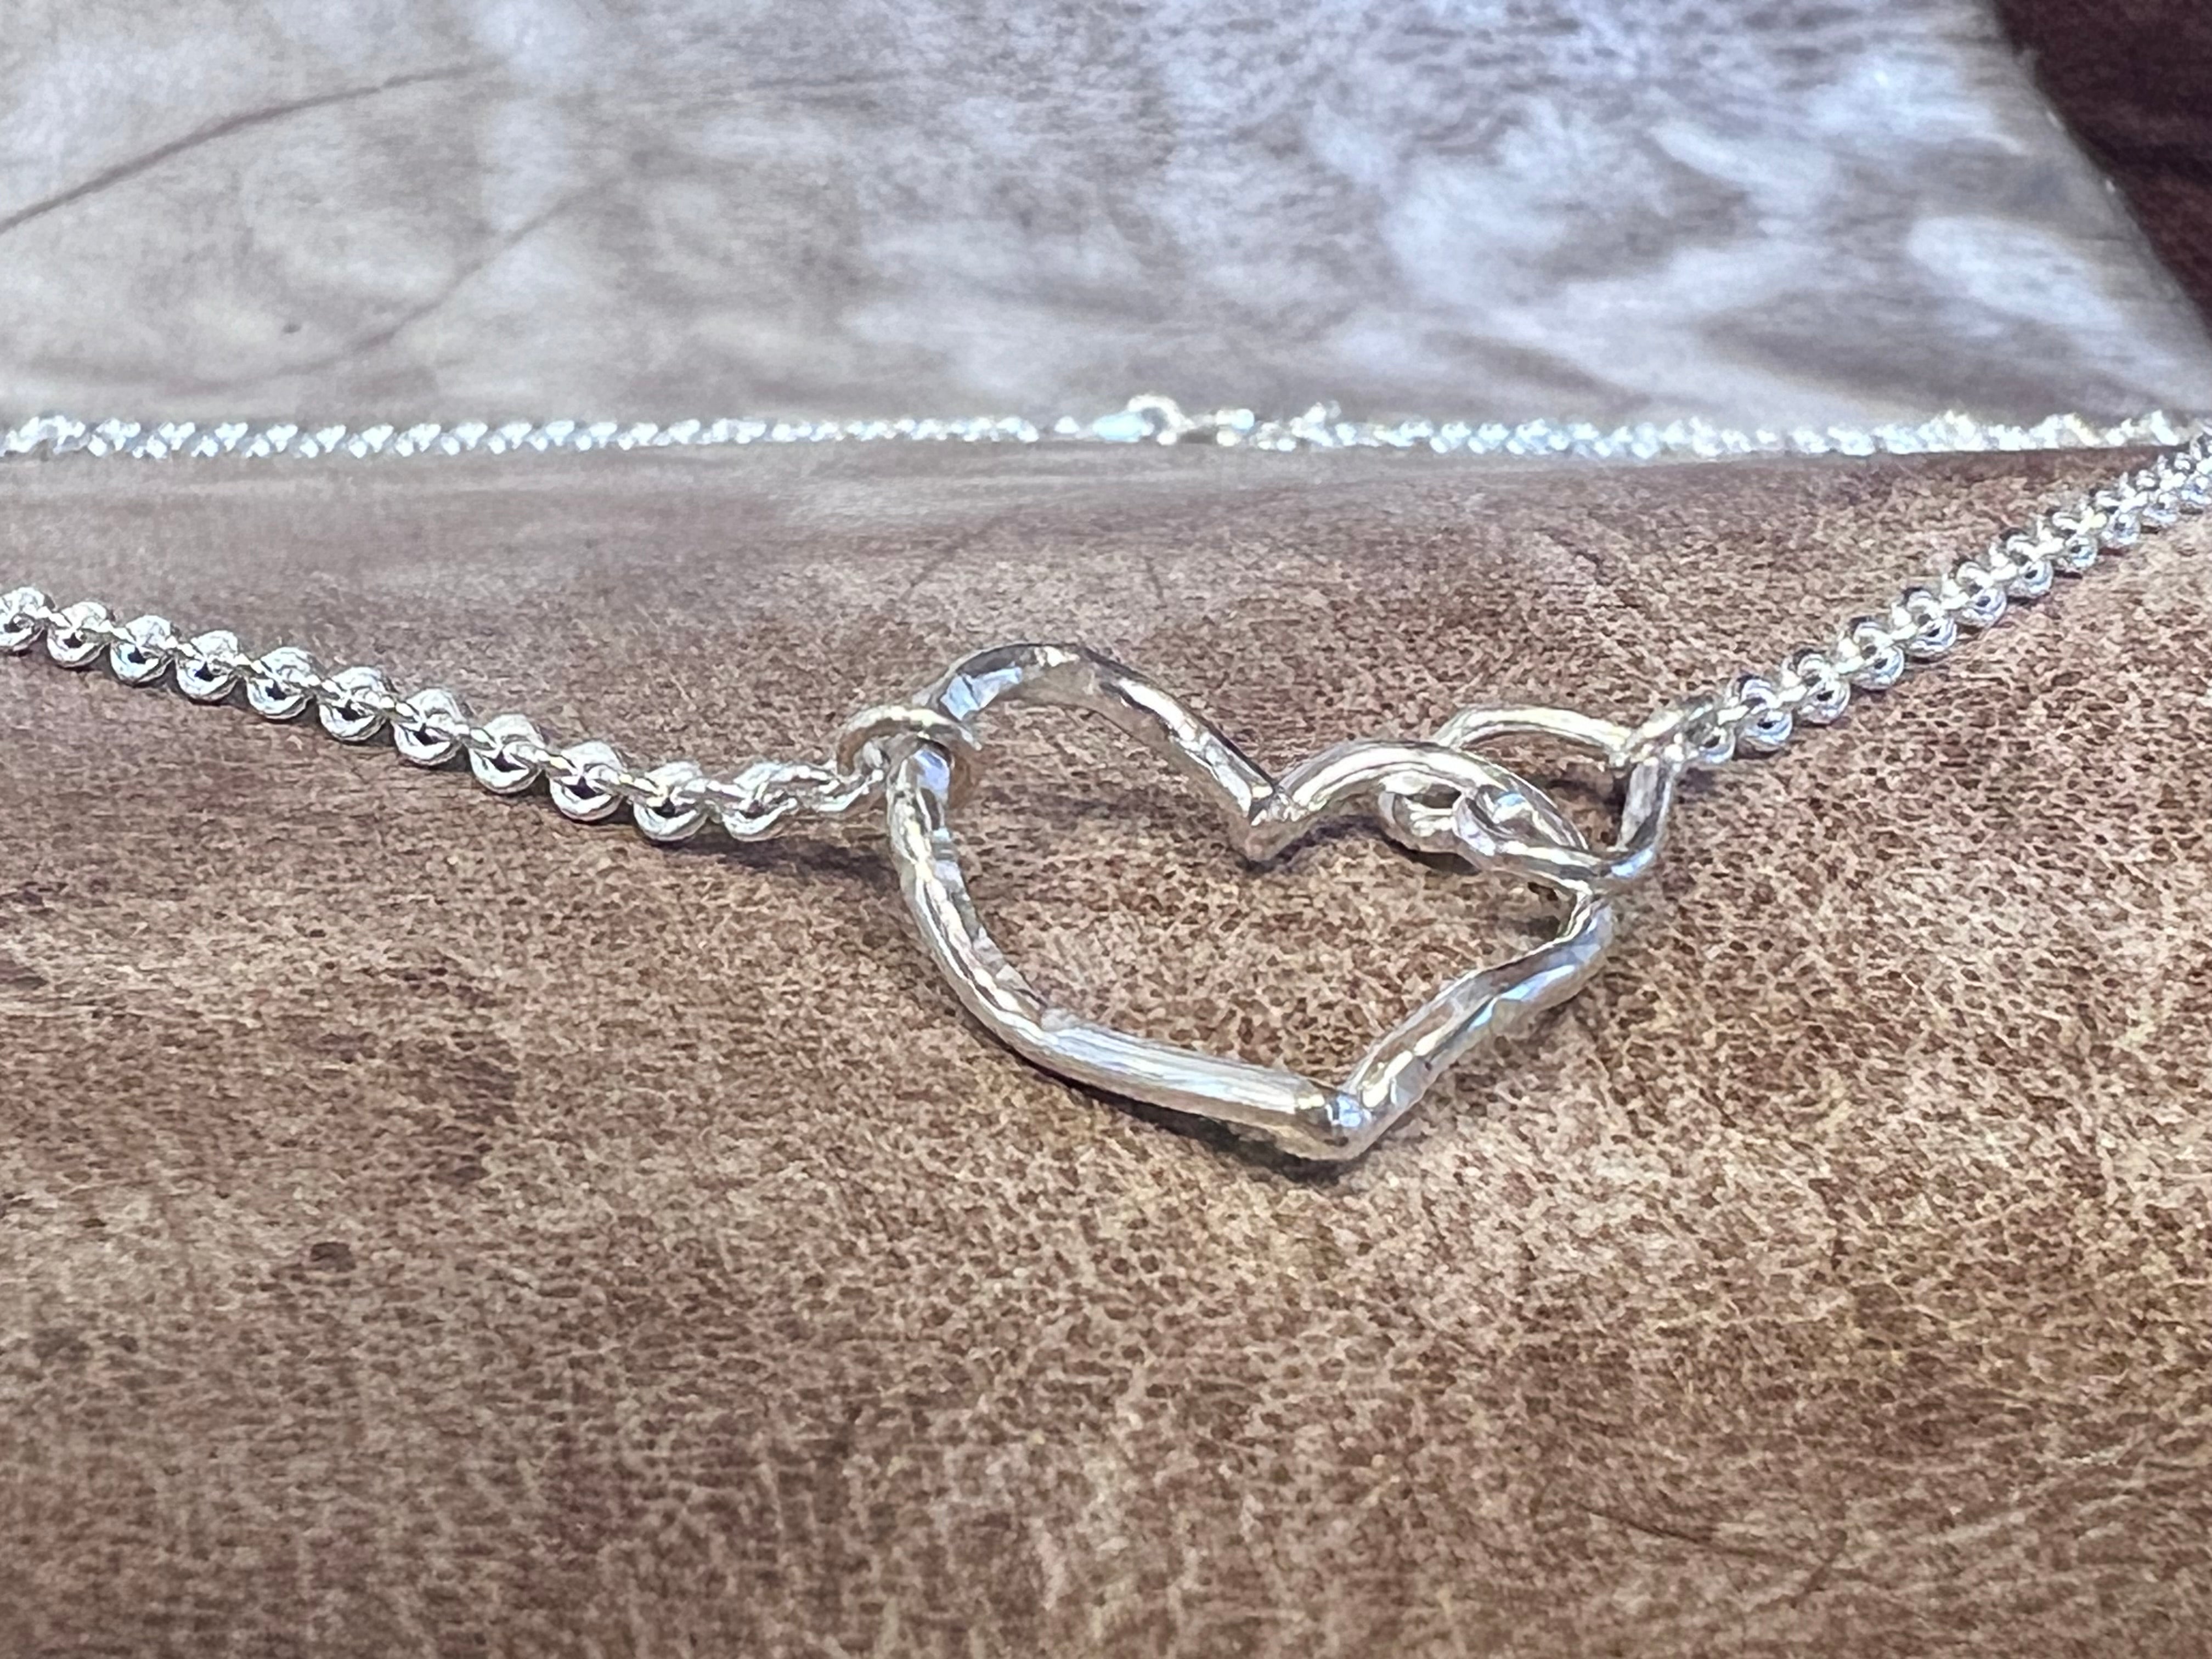 Vesterhavs sølv kæde med 2 skæve hjerte - mor/barn hjerter